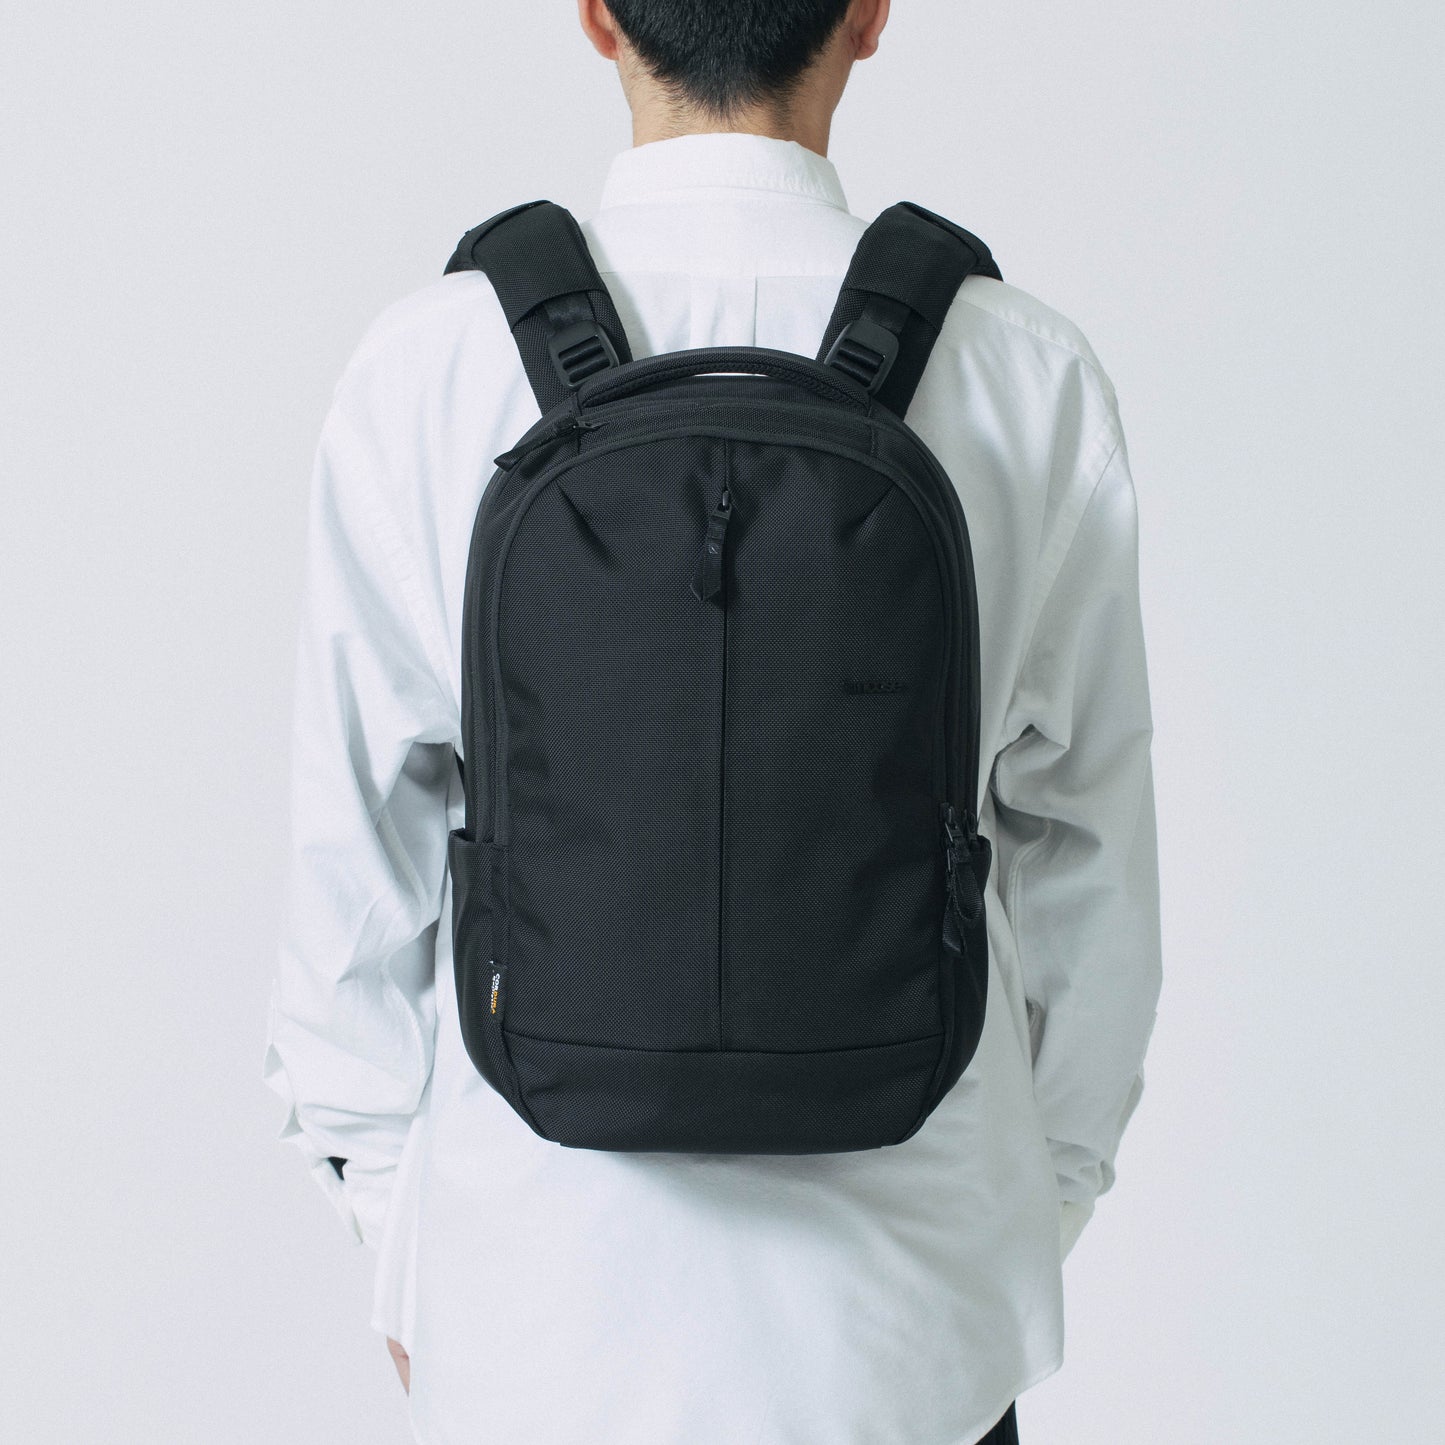 【予約販売中】Tracks Backpack 18L -Black- ※5月下旬～6月上旬お届け予定